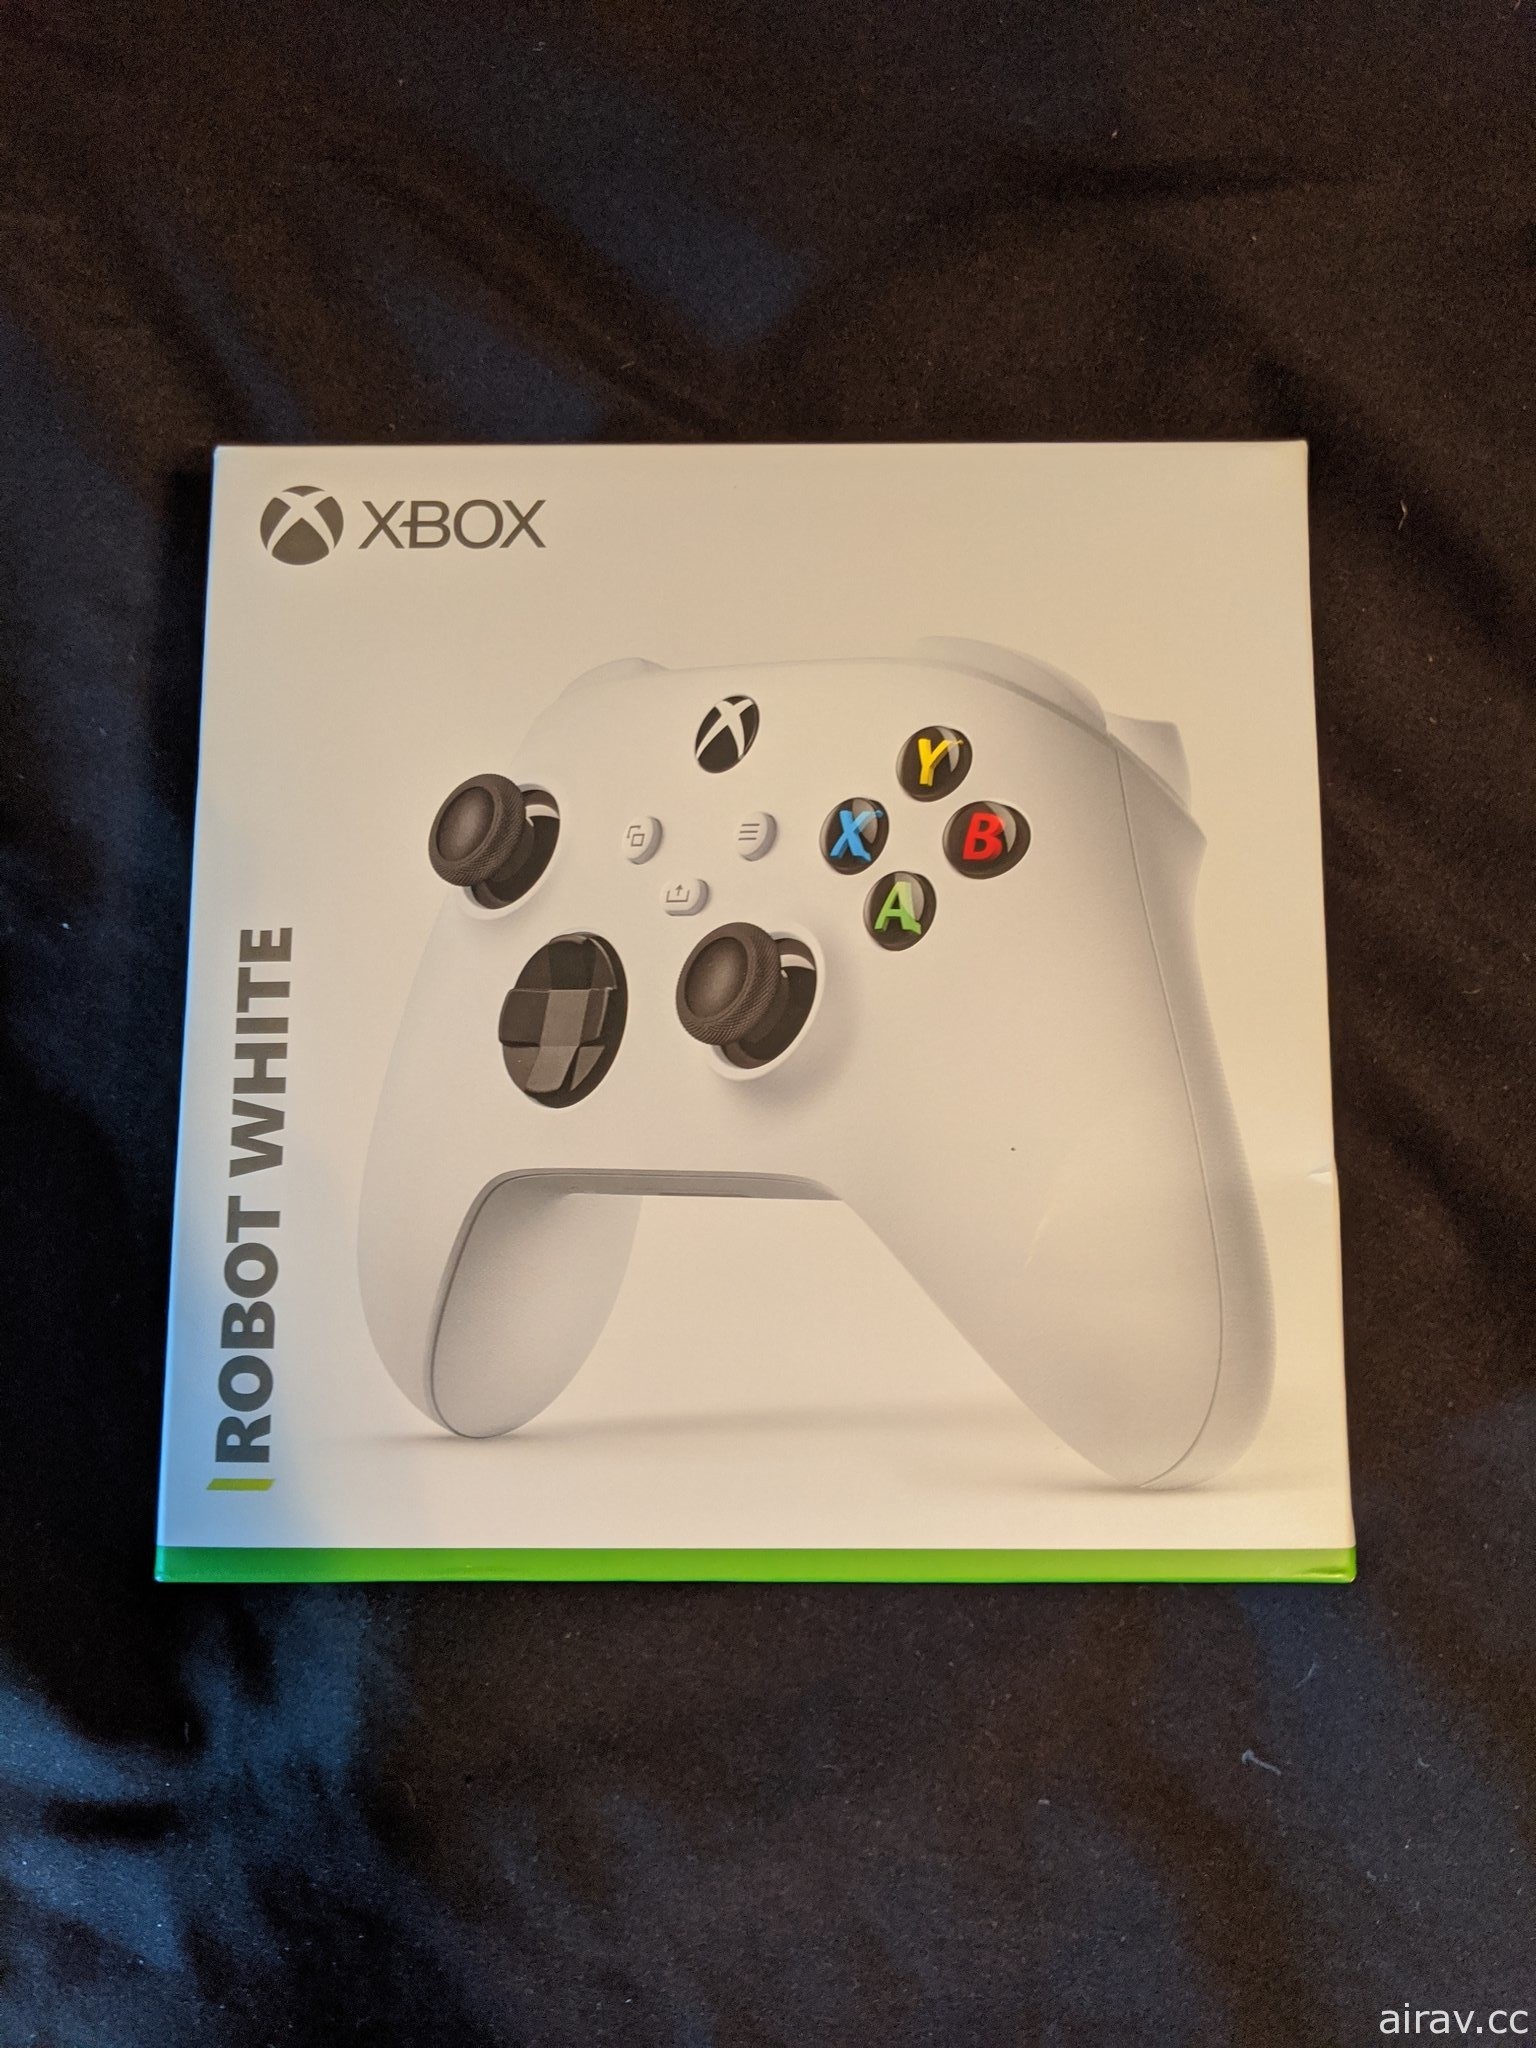 传 Xbox Series X 新型控制器已流入市面 说明书透露低阶版新主机“Series S”讯息